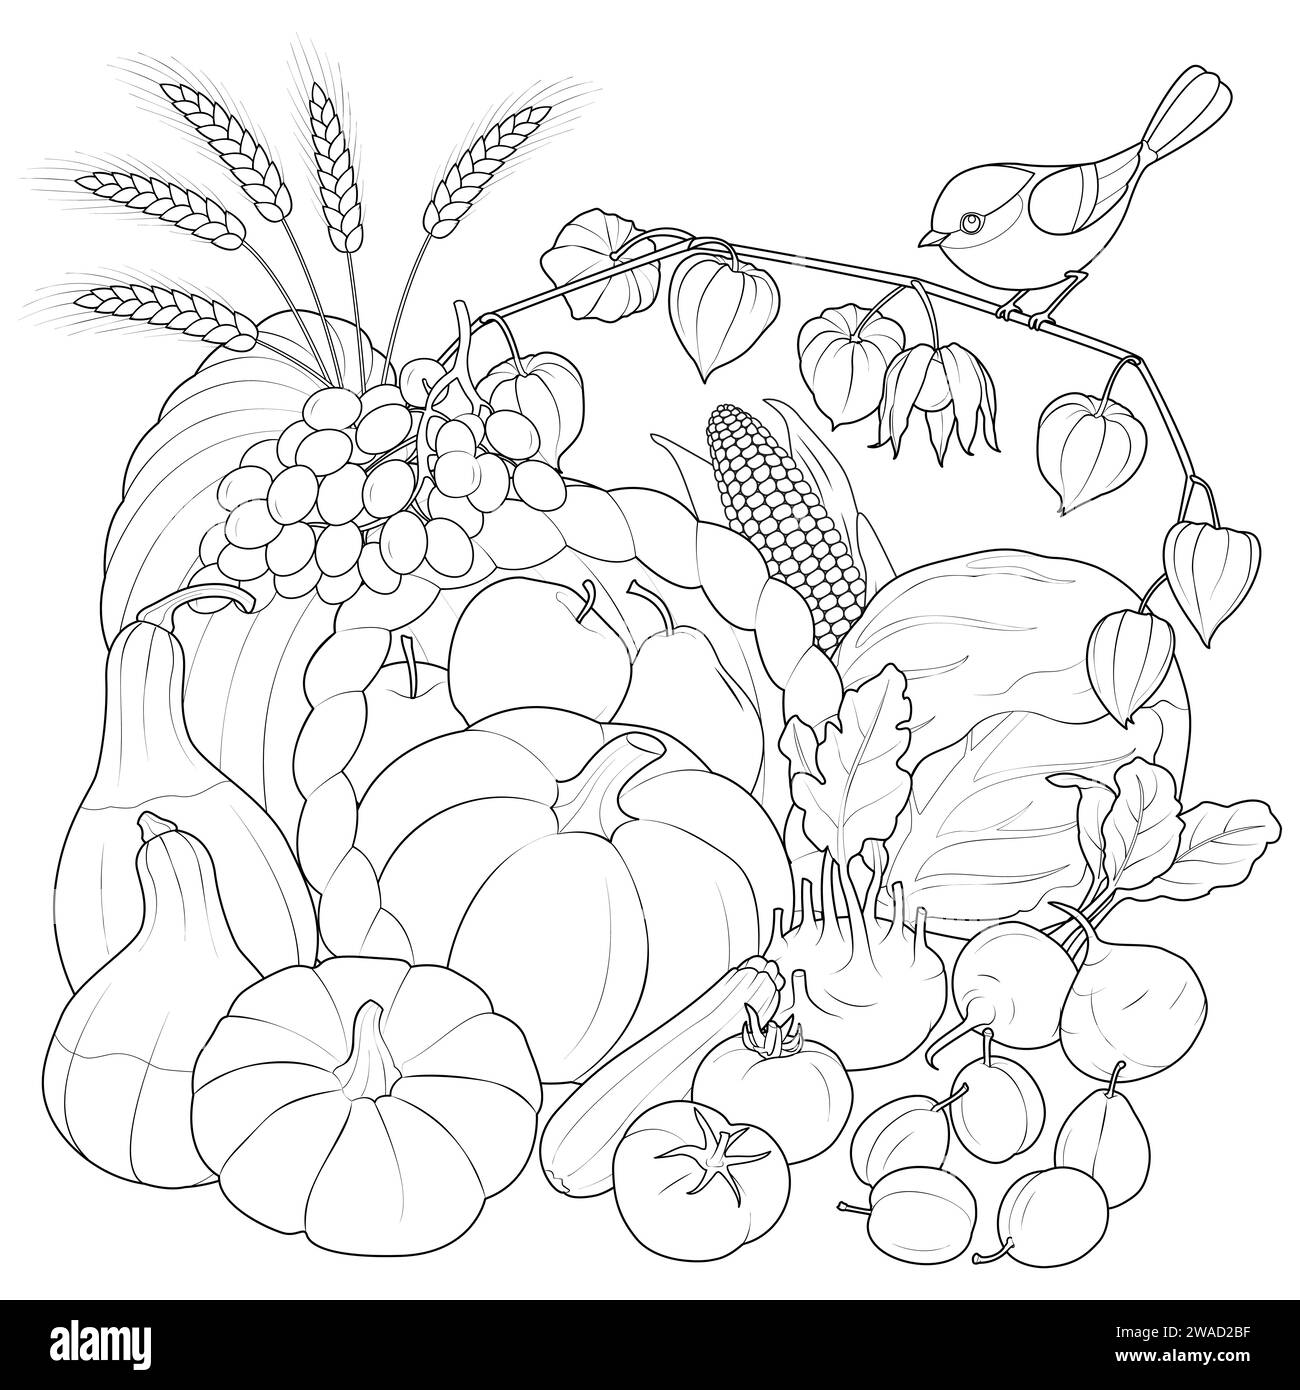 Automne récolte des légumes et des fruits avec oiseau. illustration vectorielle en noir et blanc. Coloriage pour enfants et adultes. Illustration vectorielle Illustration de Vecteur